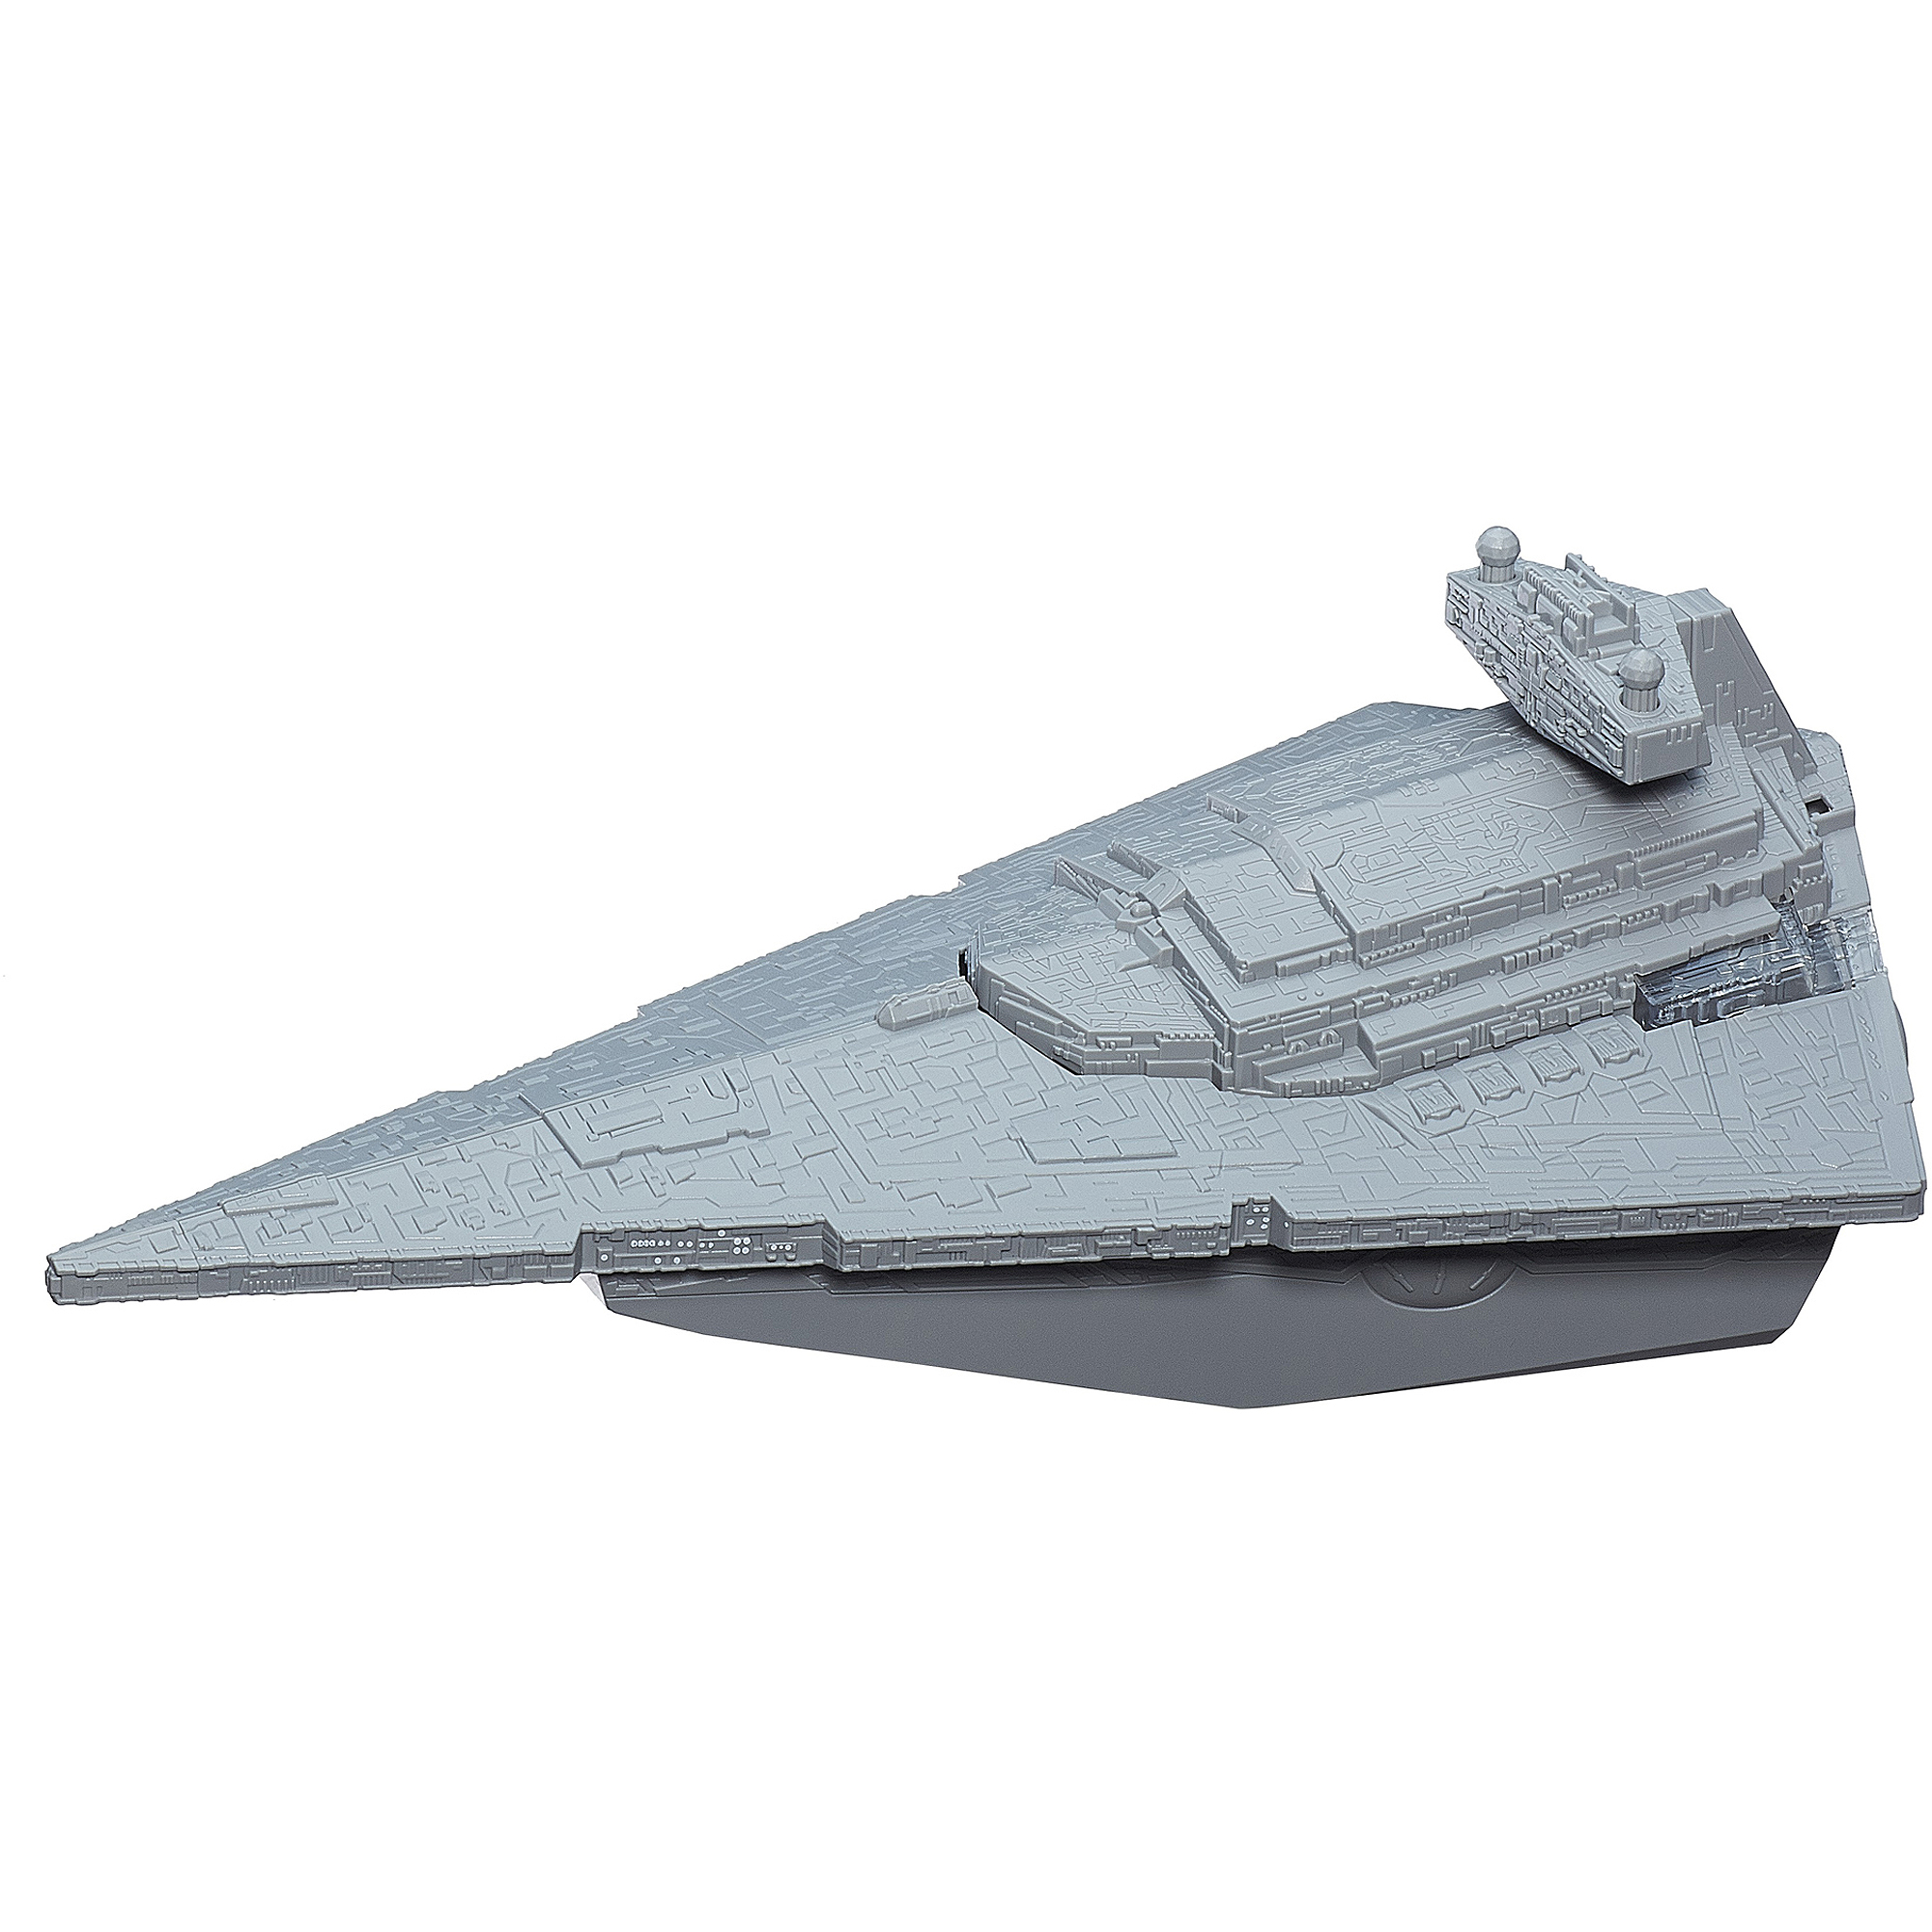 Star Wars Command Star Destroyer Set - image 3 of 10